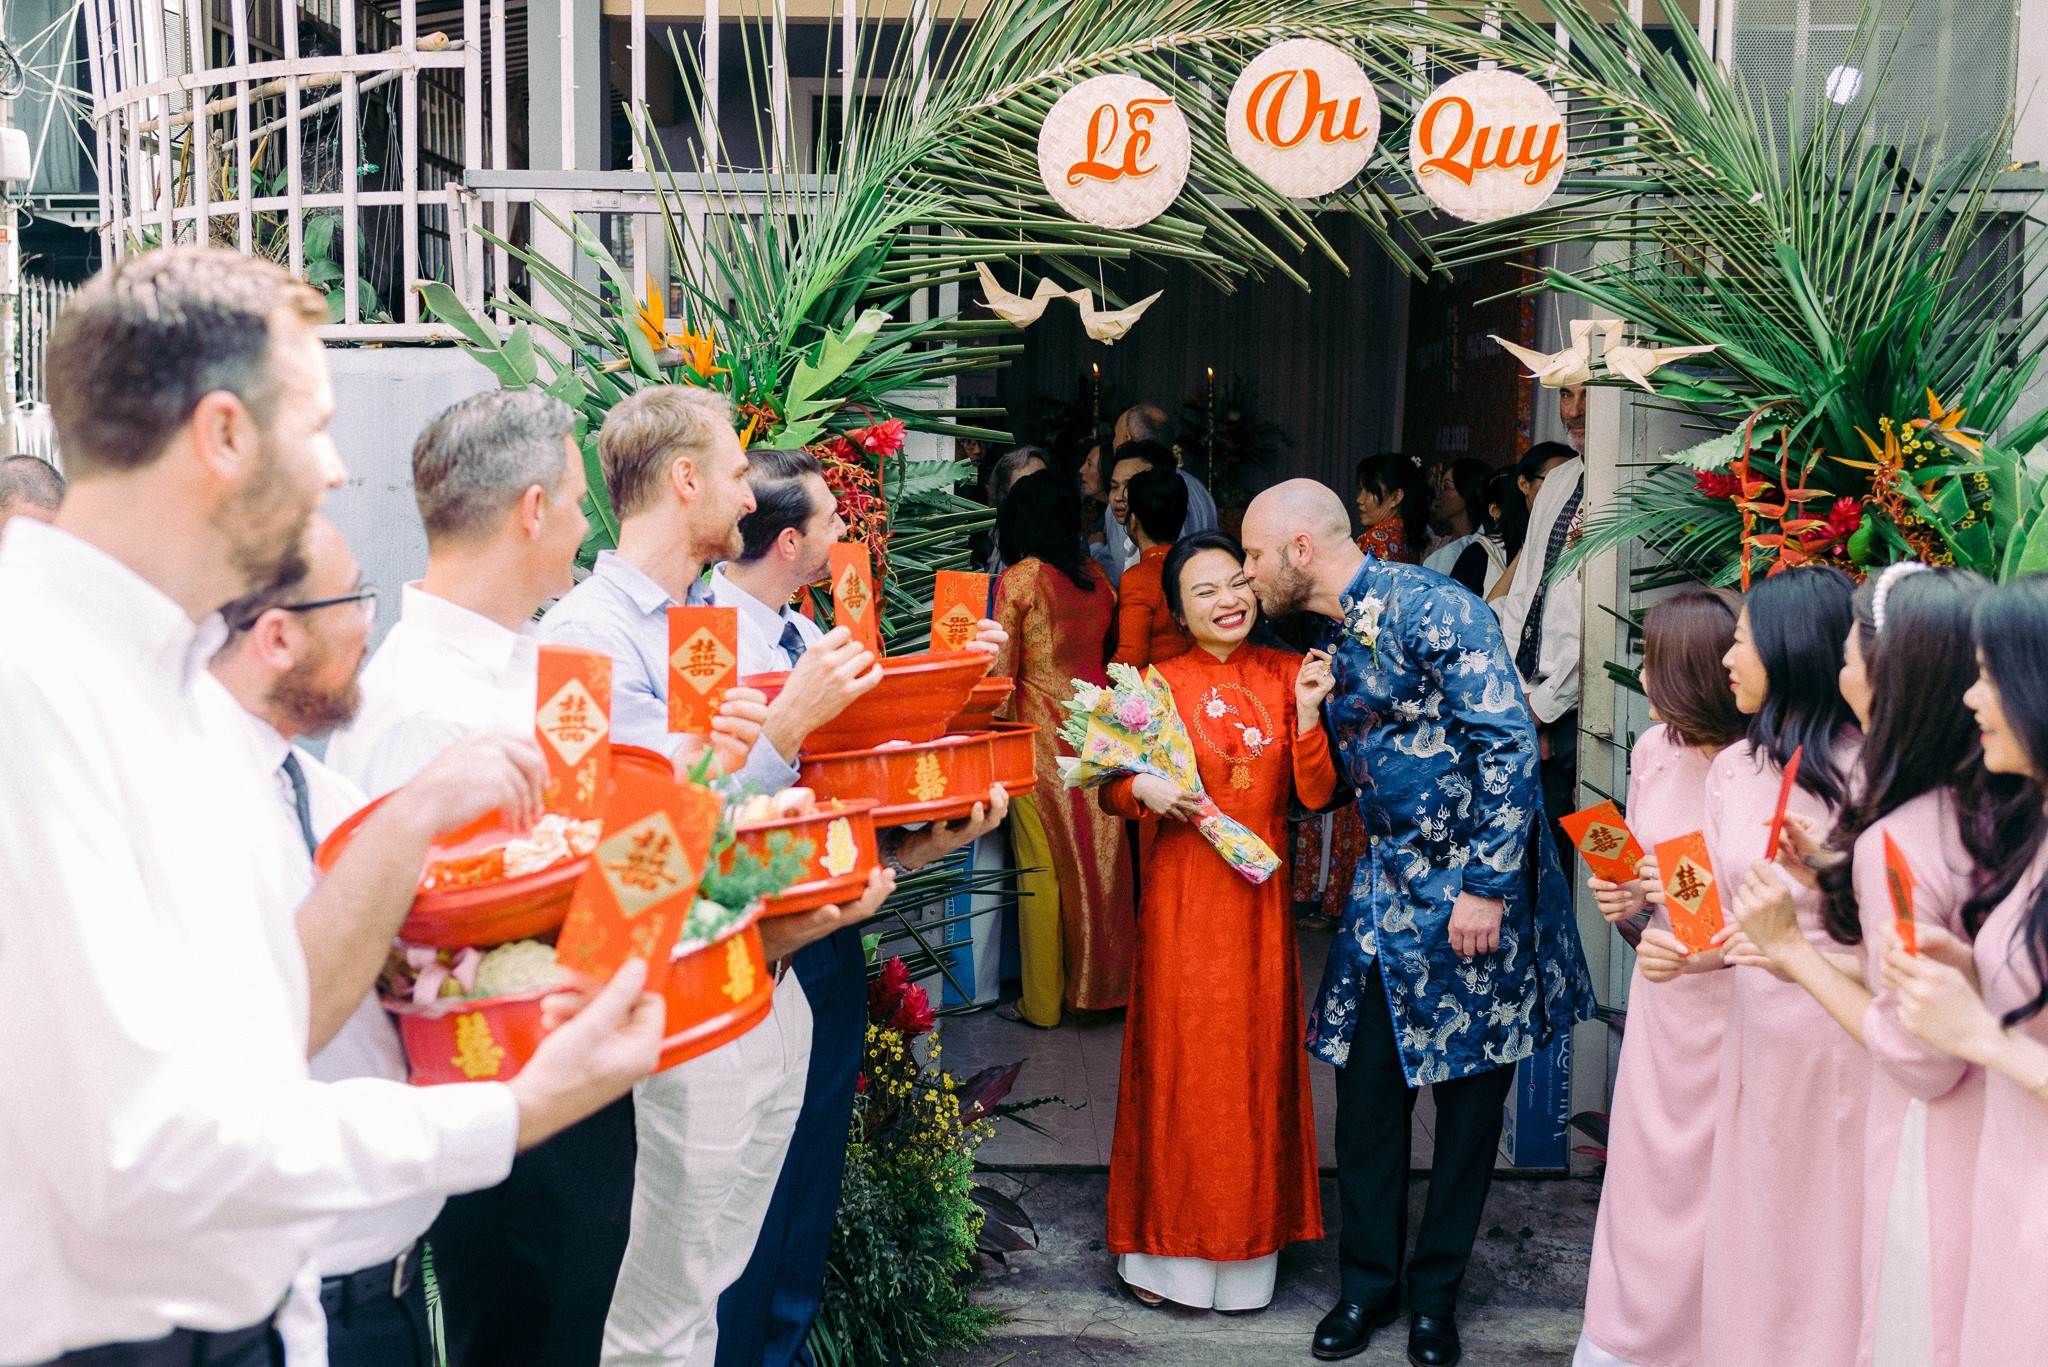 Đám cưới cây nhà lá vườn của vợ Việt, chồng Tây gây 'sốt' mạng xã hội